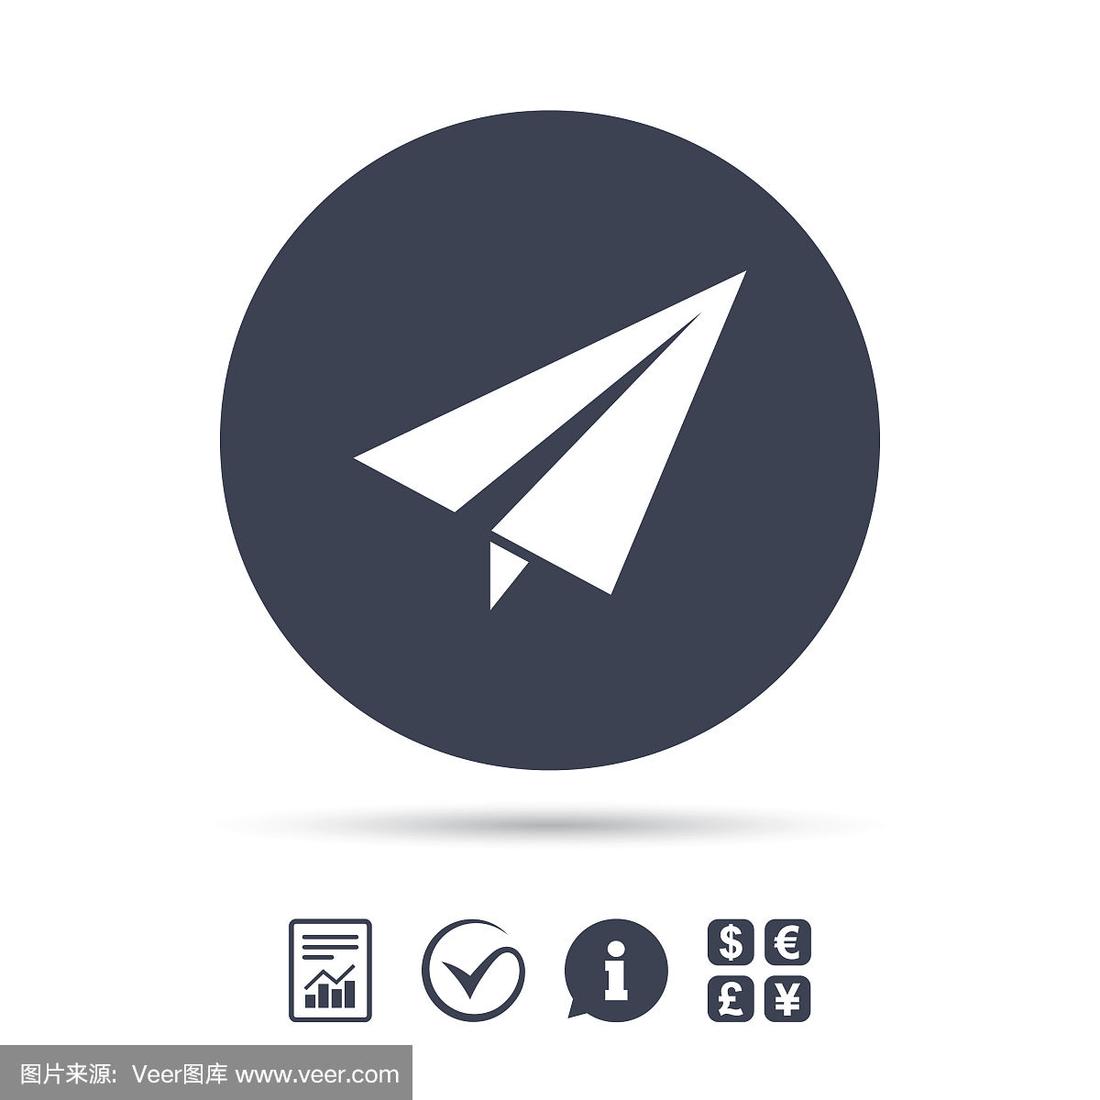 纸飞机图标的聊天软件_一个纸飞机的图标社交软件